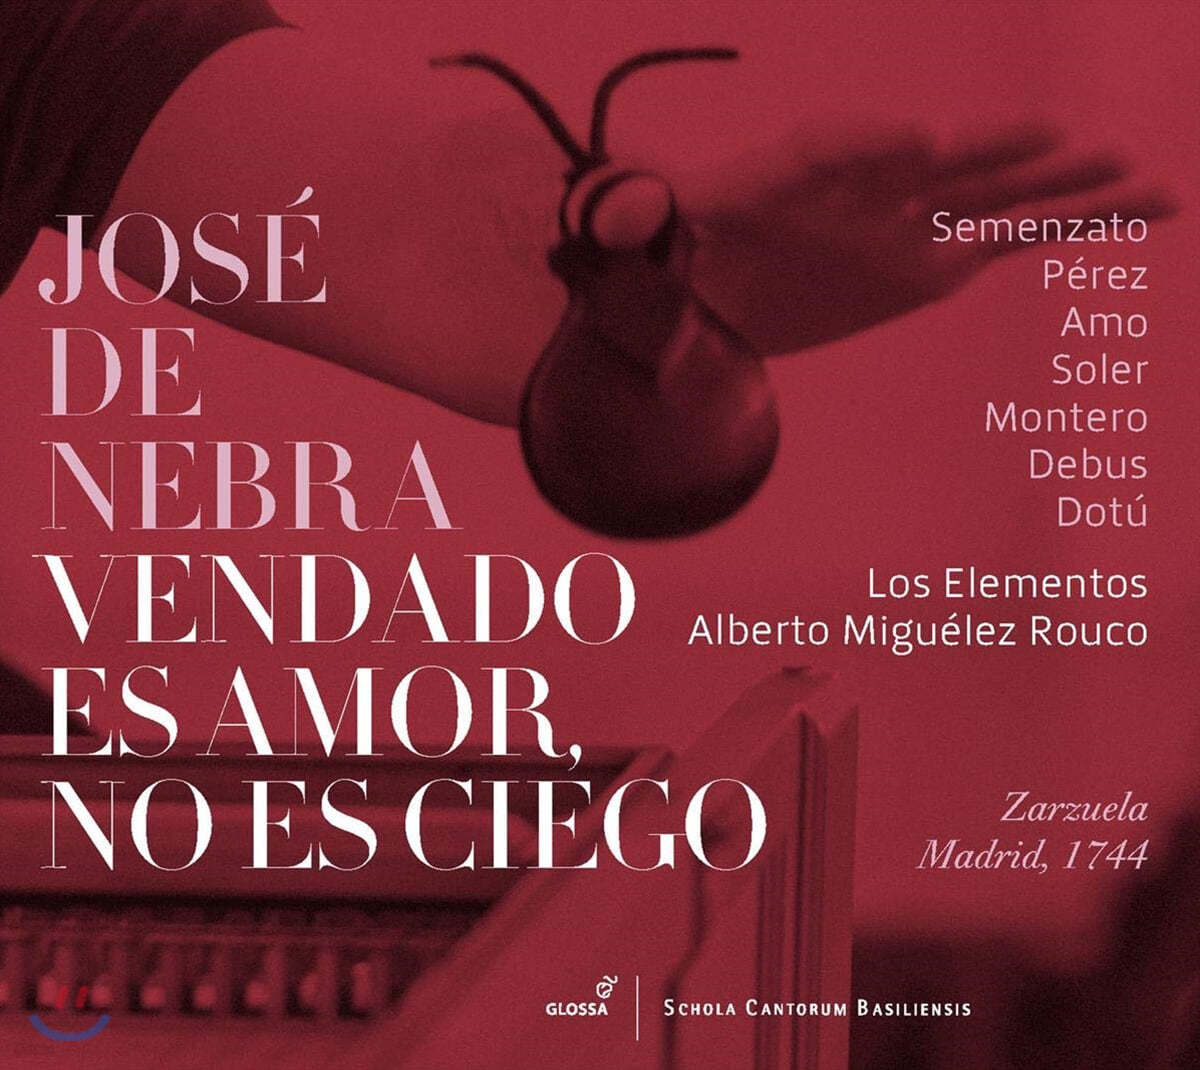 호세 데 네브라: 오페라 &#39;눈 먼 사랑은 눈 멀지 않고&#39; (Jose de Nebra: Vendado Es Amor, No Es Ciego) 